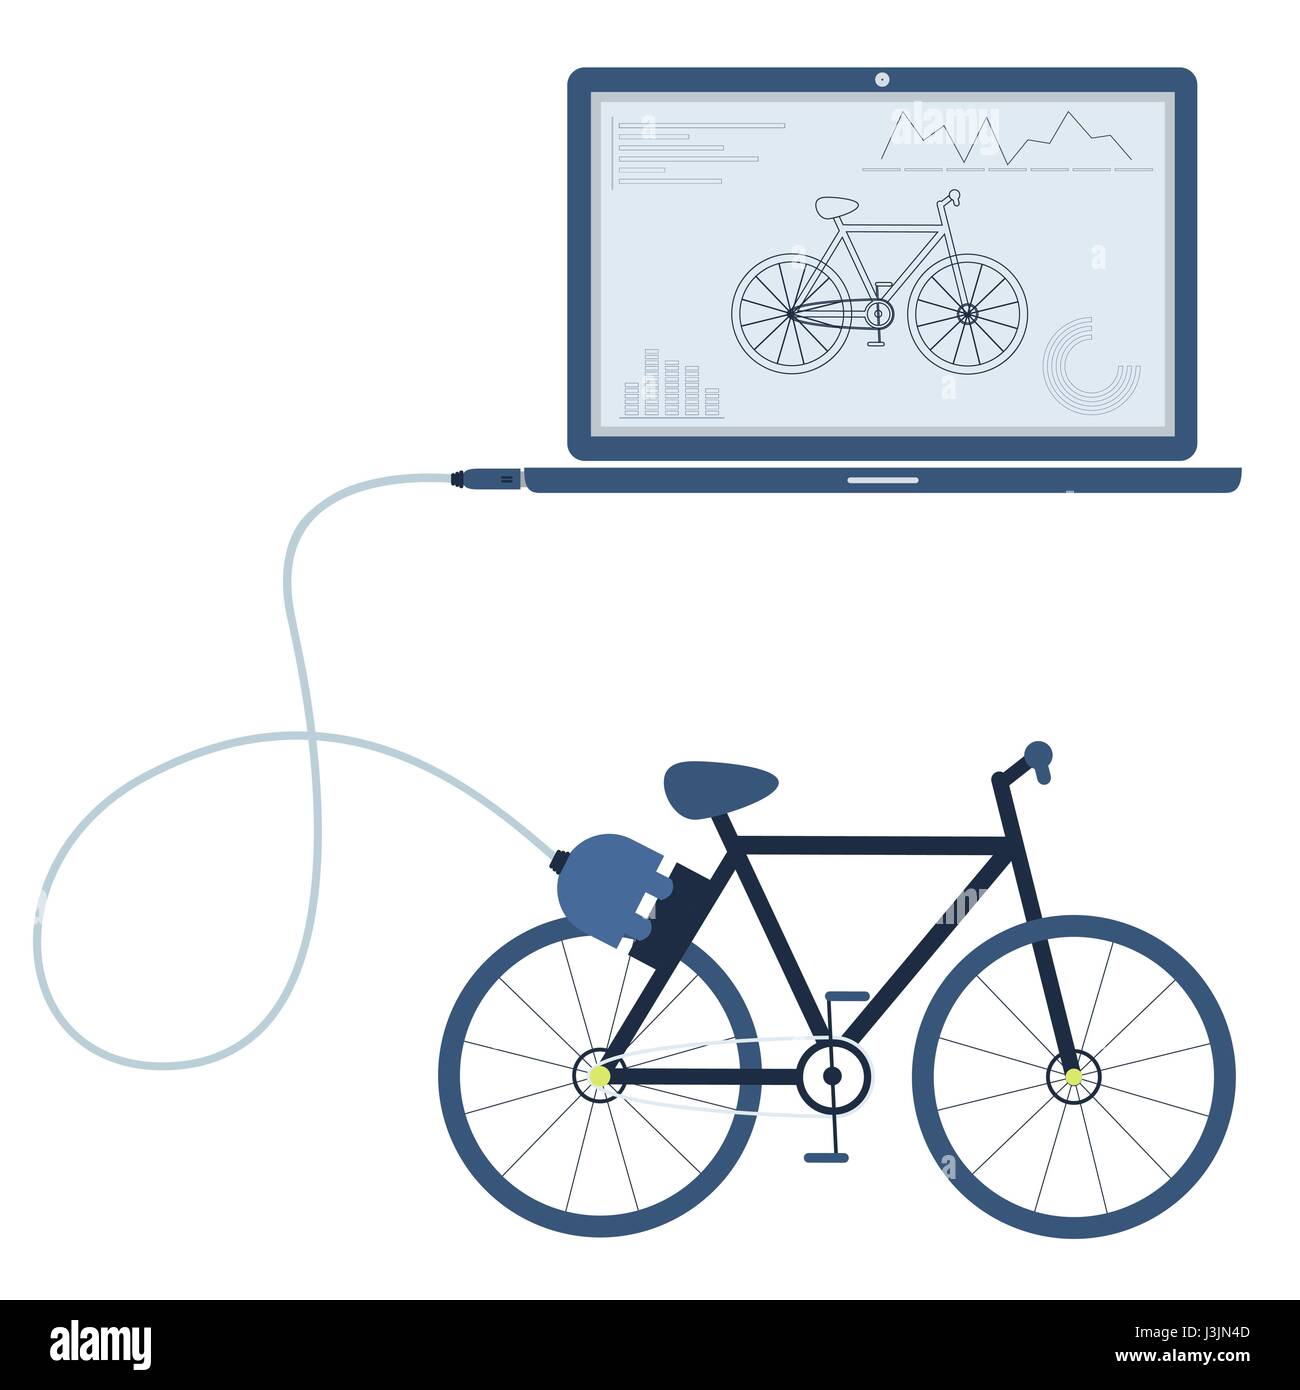 Fahrrad an ein Notebook über ein USB-Kabel angeschlossen. Gliederung der Rad- und Grafiken auf dem Computermonitor angezeigt wird. Flaches Design. Isoliert. Stock Vektor